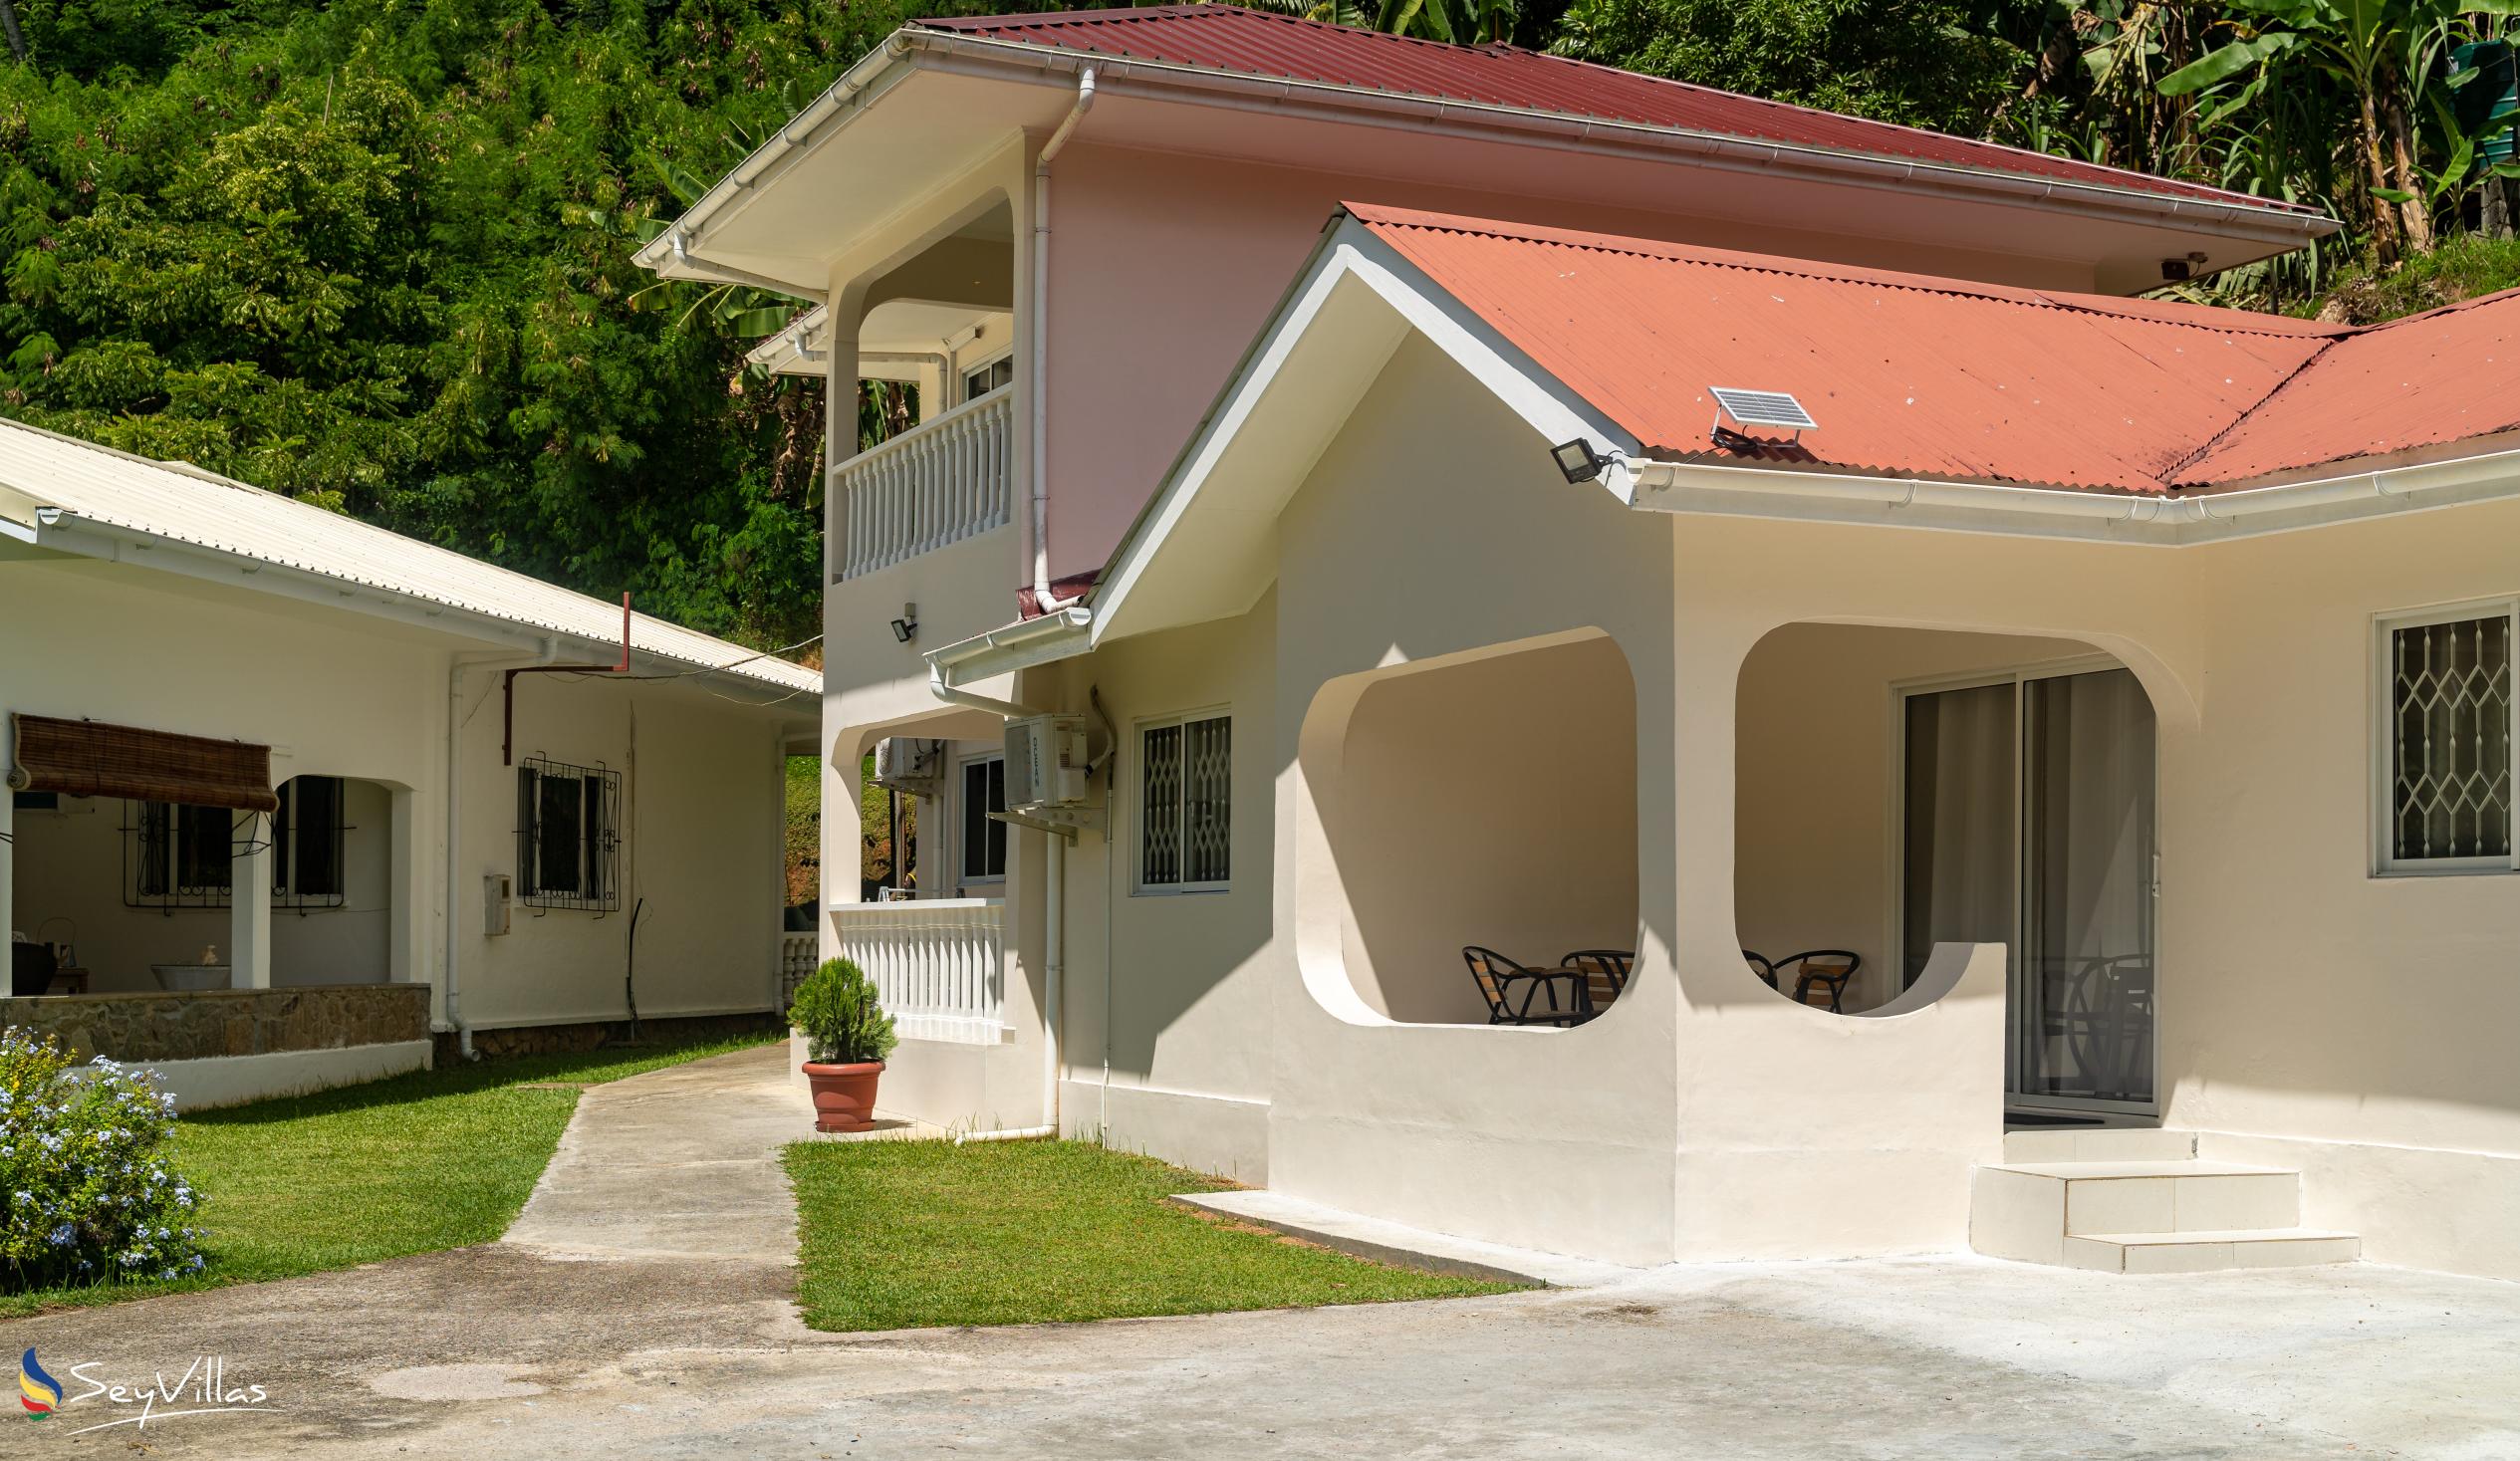 Photo 7: Paul's Residence - Outdoor area - Mahé (Seychelles)